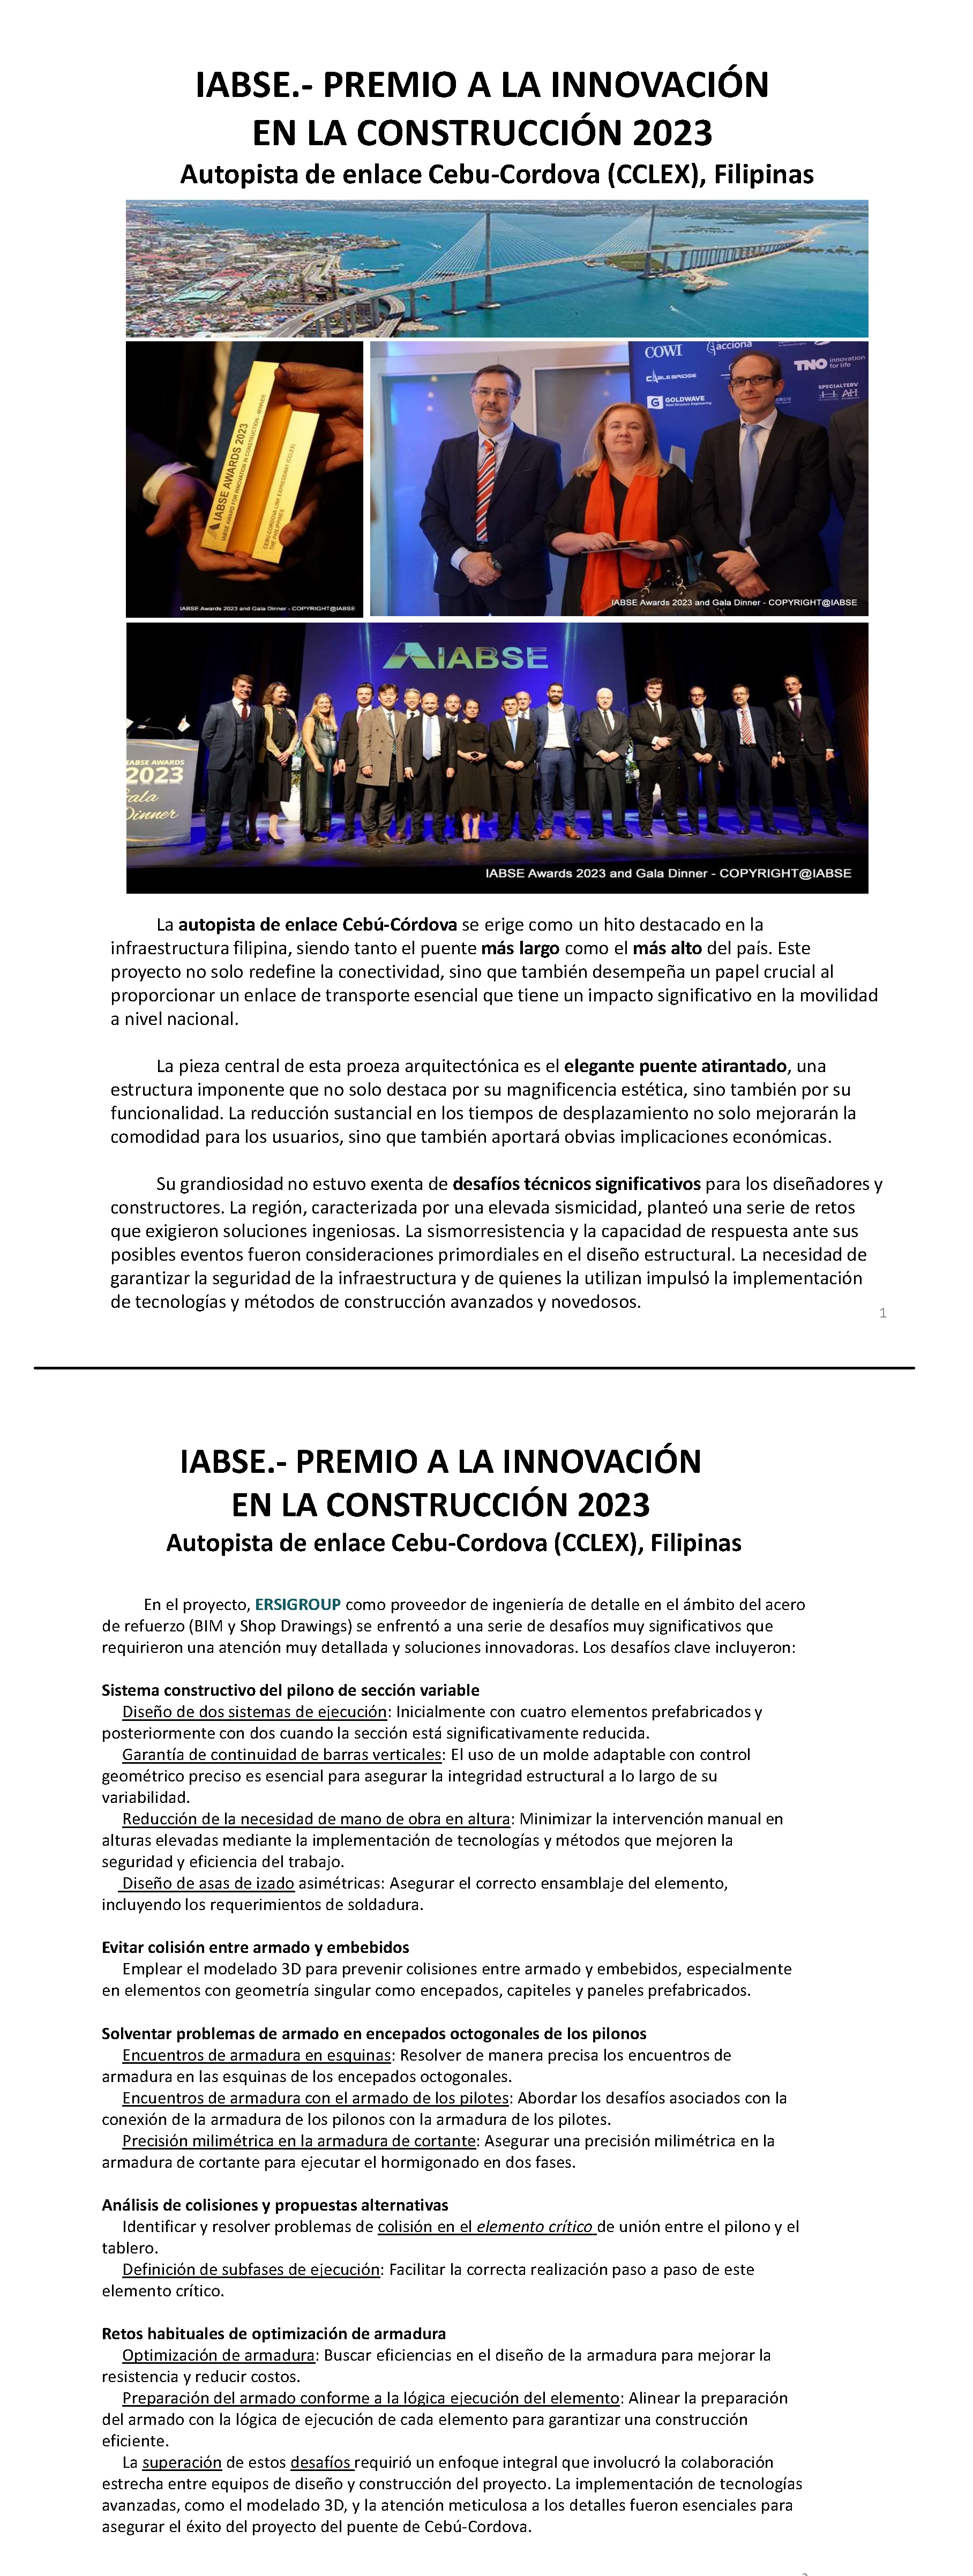 IABSE.- PREMIO A LA INNOVACIÓN EN LA CONSTRUCCIÓN 2023